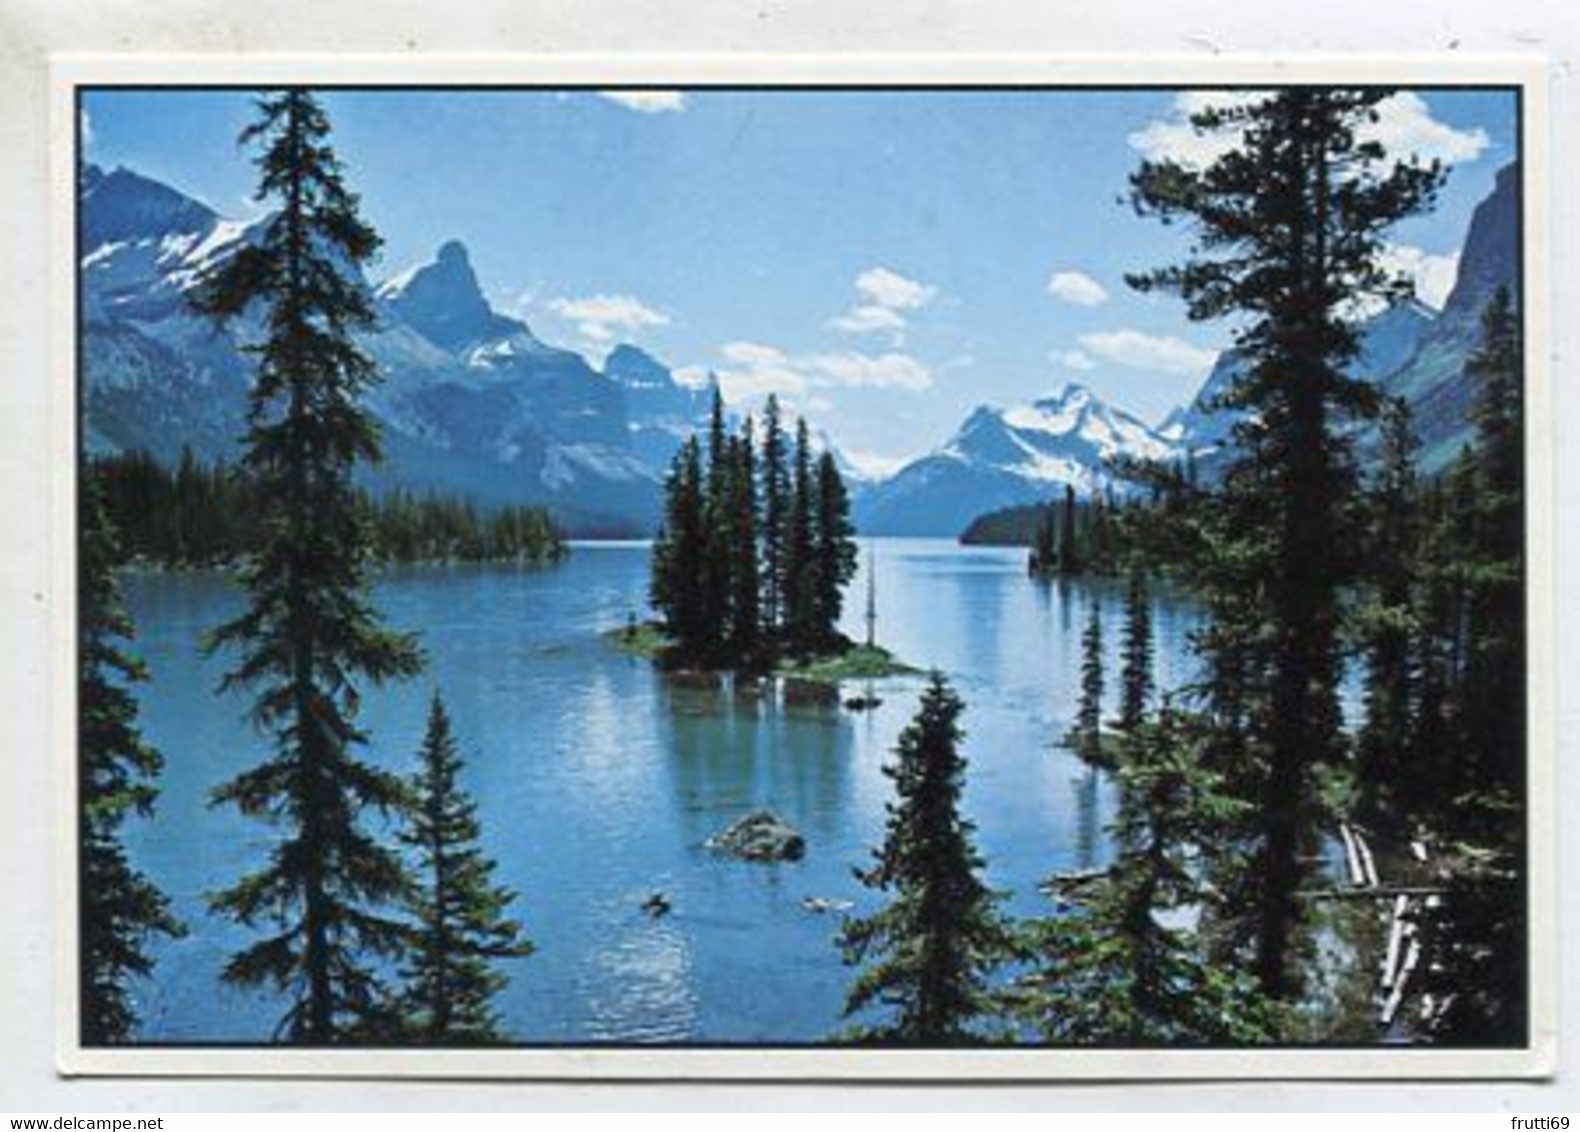 AK 03759 CANADA - Alberta - Jasper National Park - Maligne Lake - Jasper